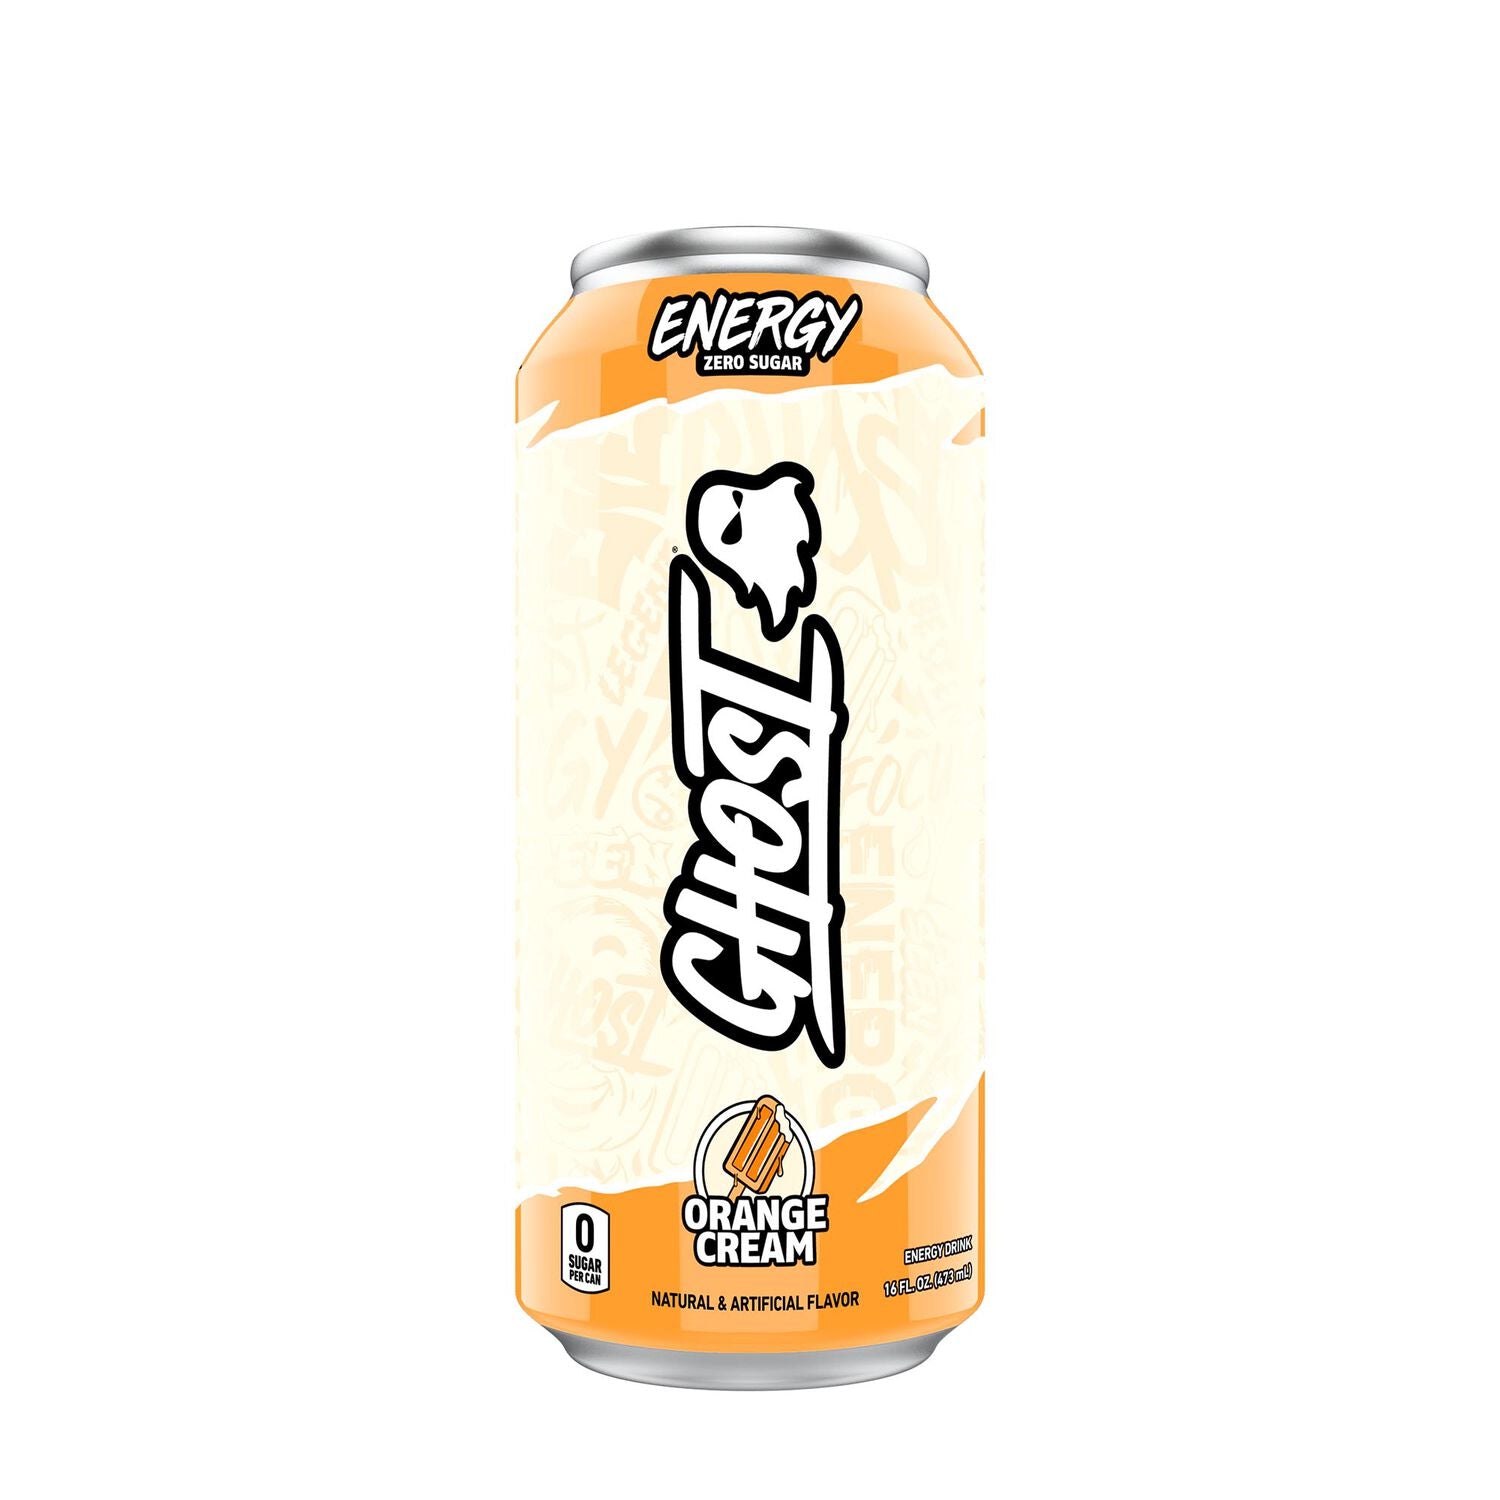 GHOST - Energy Drink - 473ml